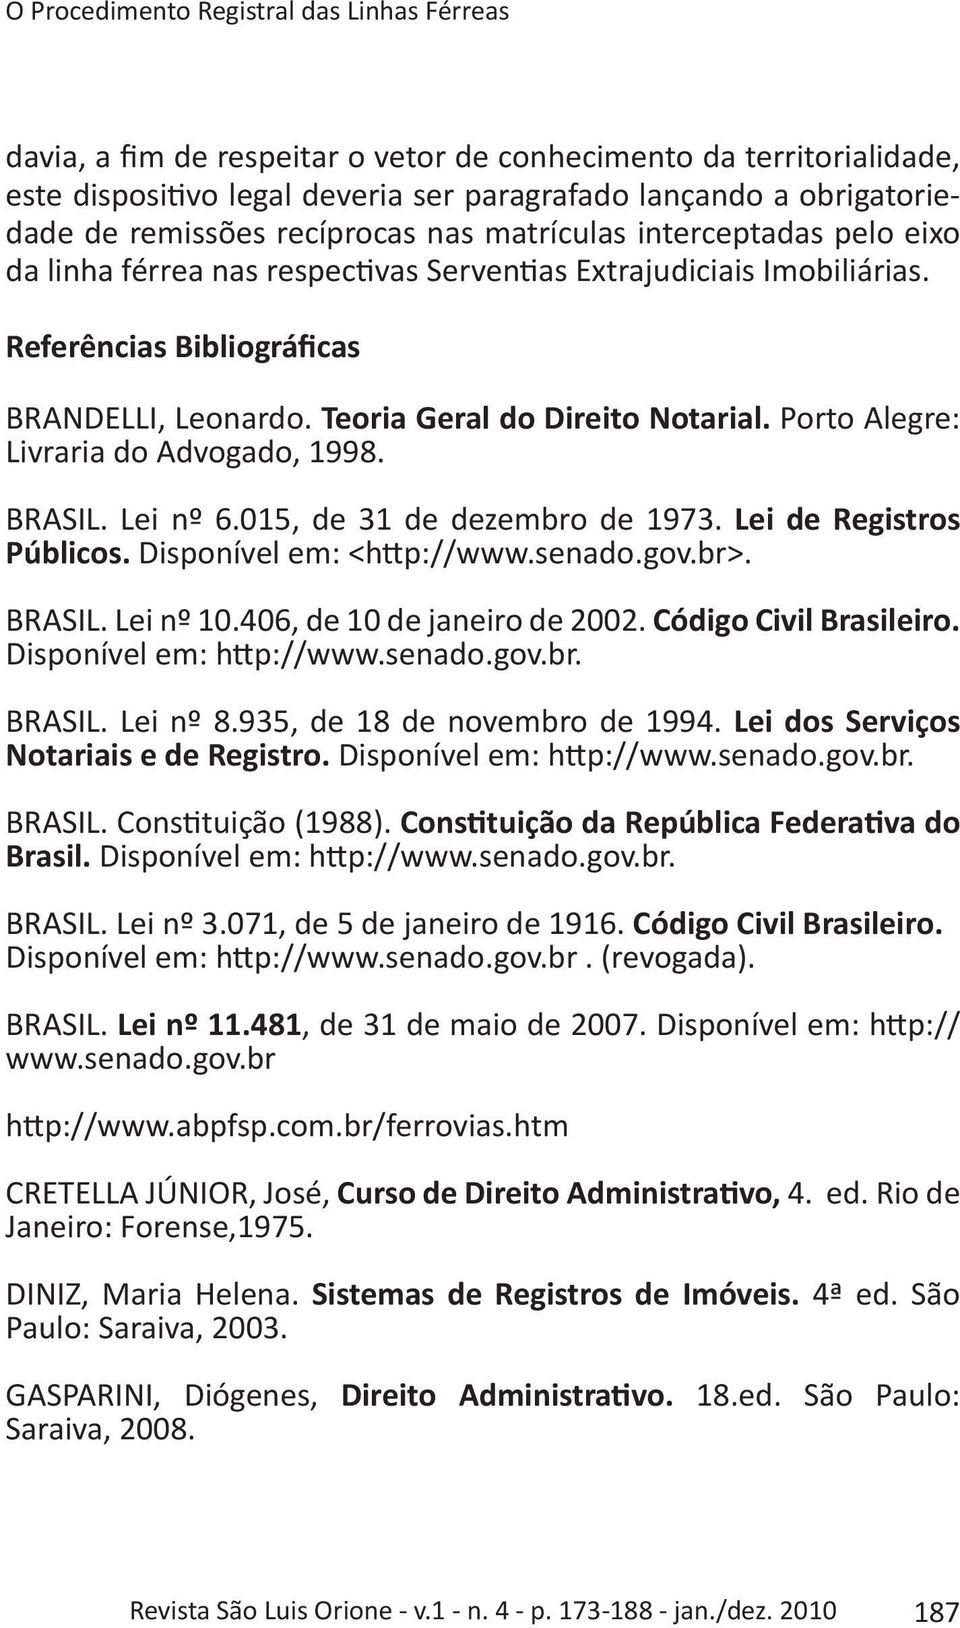 Teoria Geral do Direito Notarial. Porto Alegre: Livraria do Advogado, 1998. BRASIL. Lei nº 6.015, de 31 de dezembro de 1973. Lei de Registros Públicos. Disponível em: <http://www.senado.gov.br>.